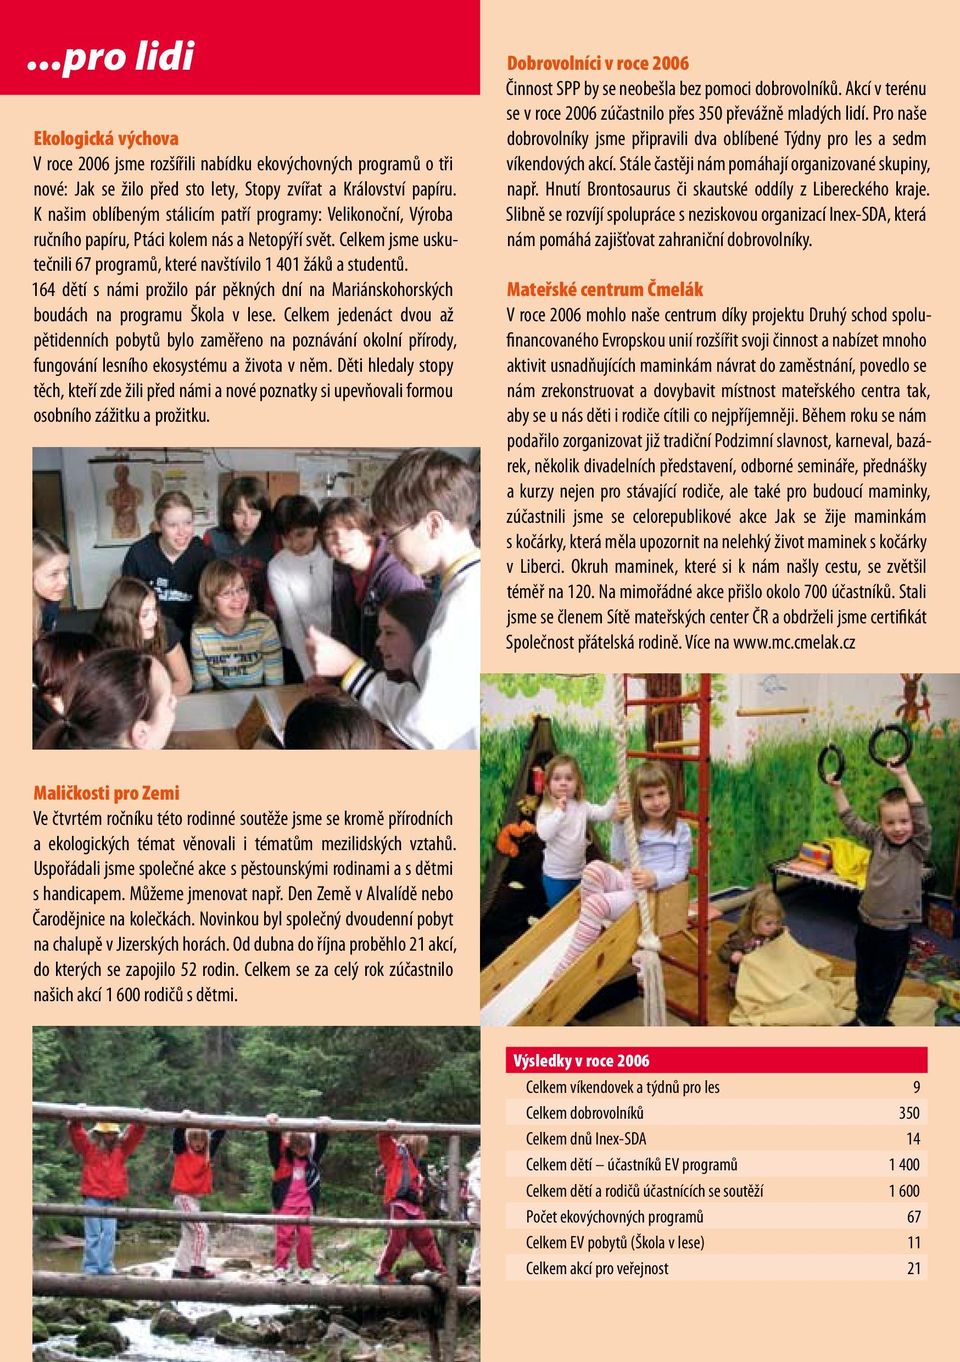 164 dětí s námi prožilo pár pěkných dní na Mariánskohorských boudách na programu Škola v lese.